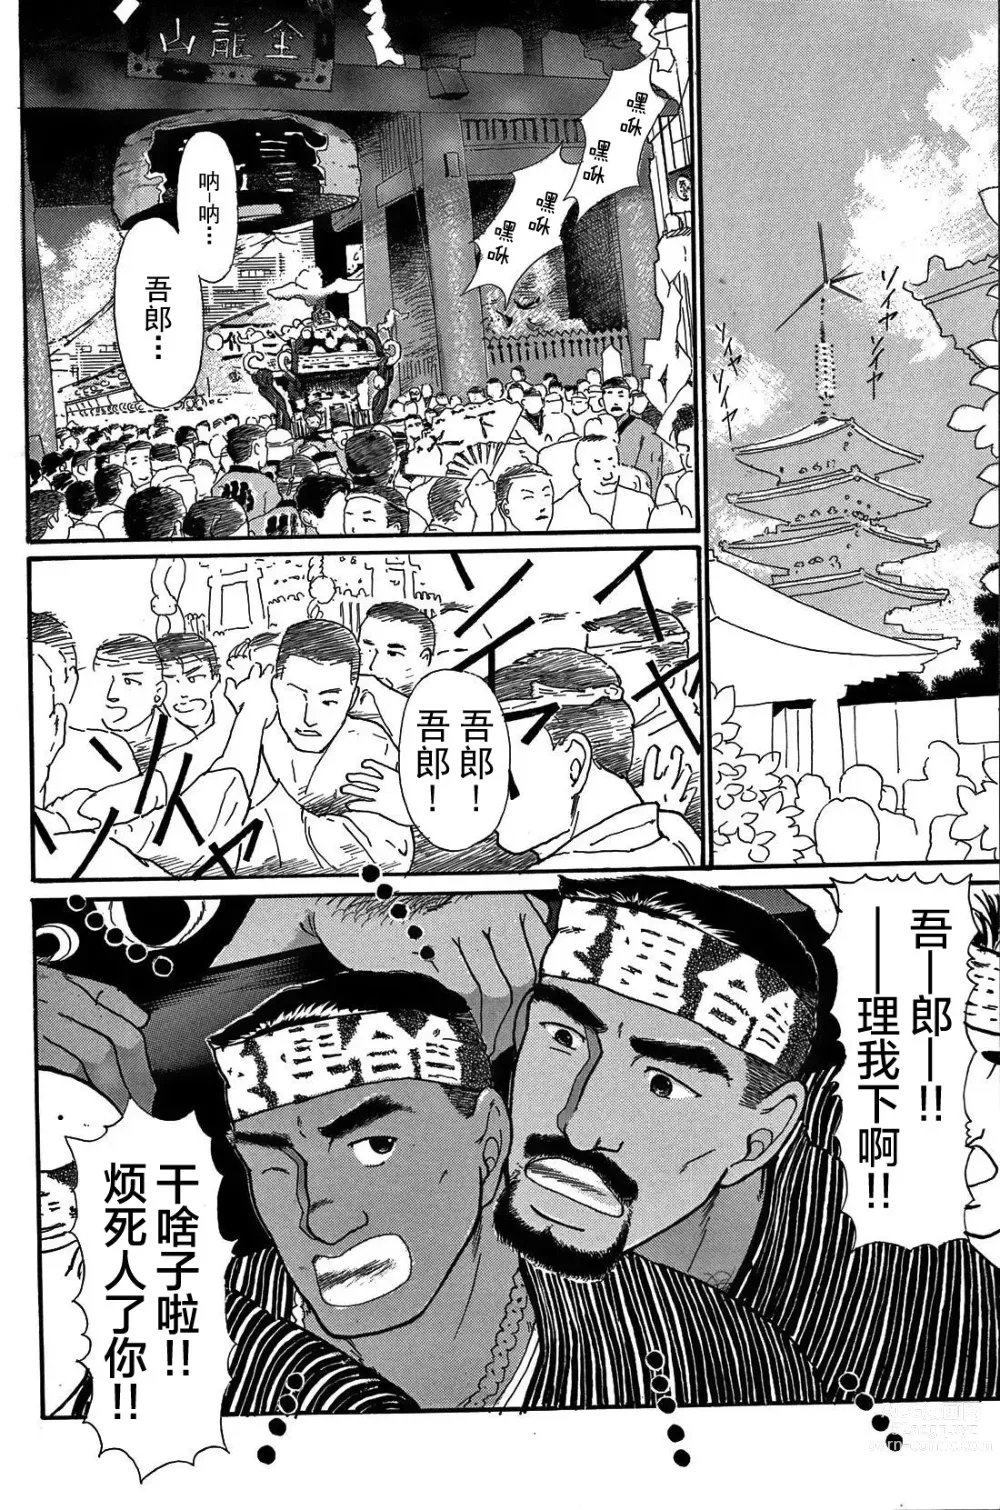 Page 3 of manga 纯情-第一章-纯情!!